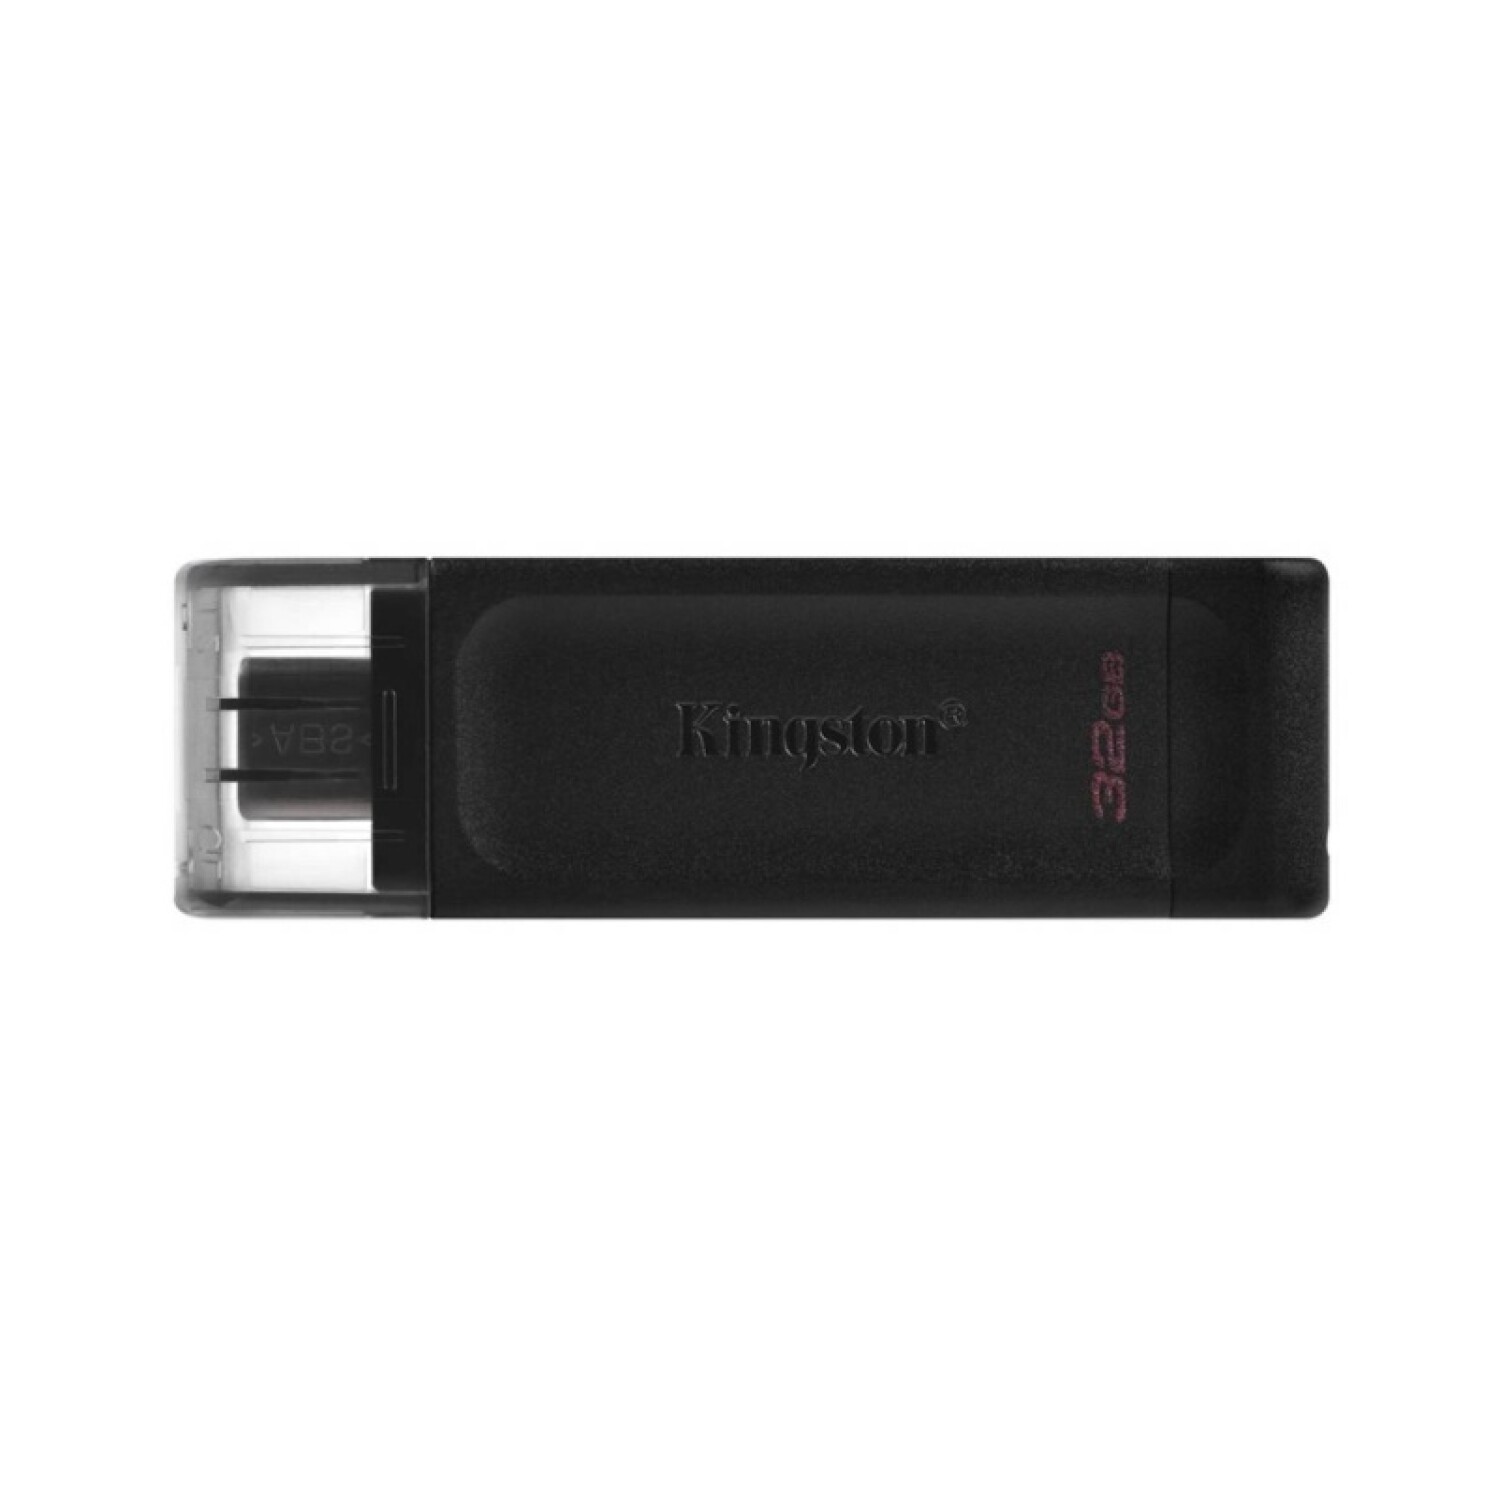 Memoria USB Kingston Data traveler 70 32GB USB-C